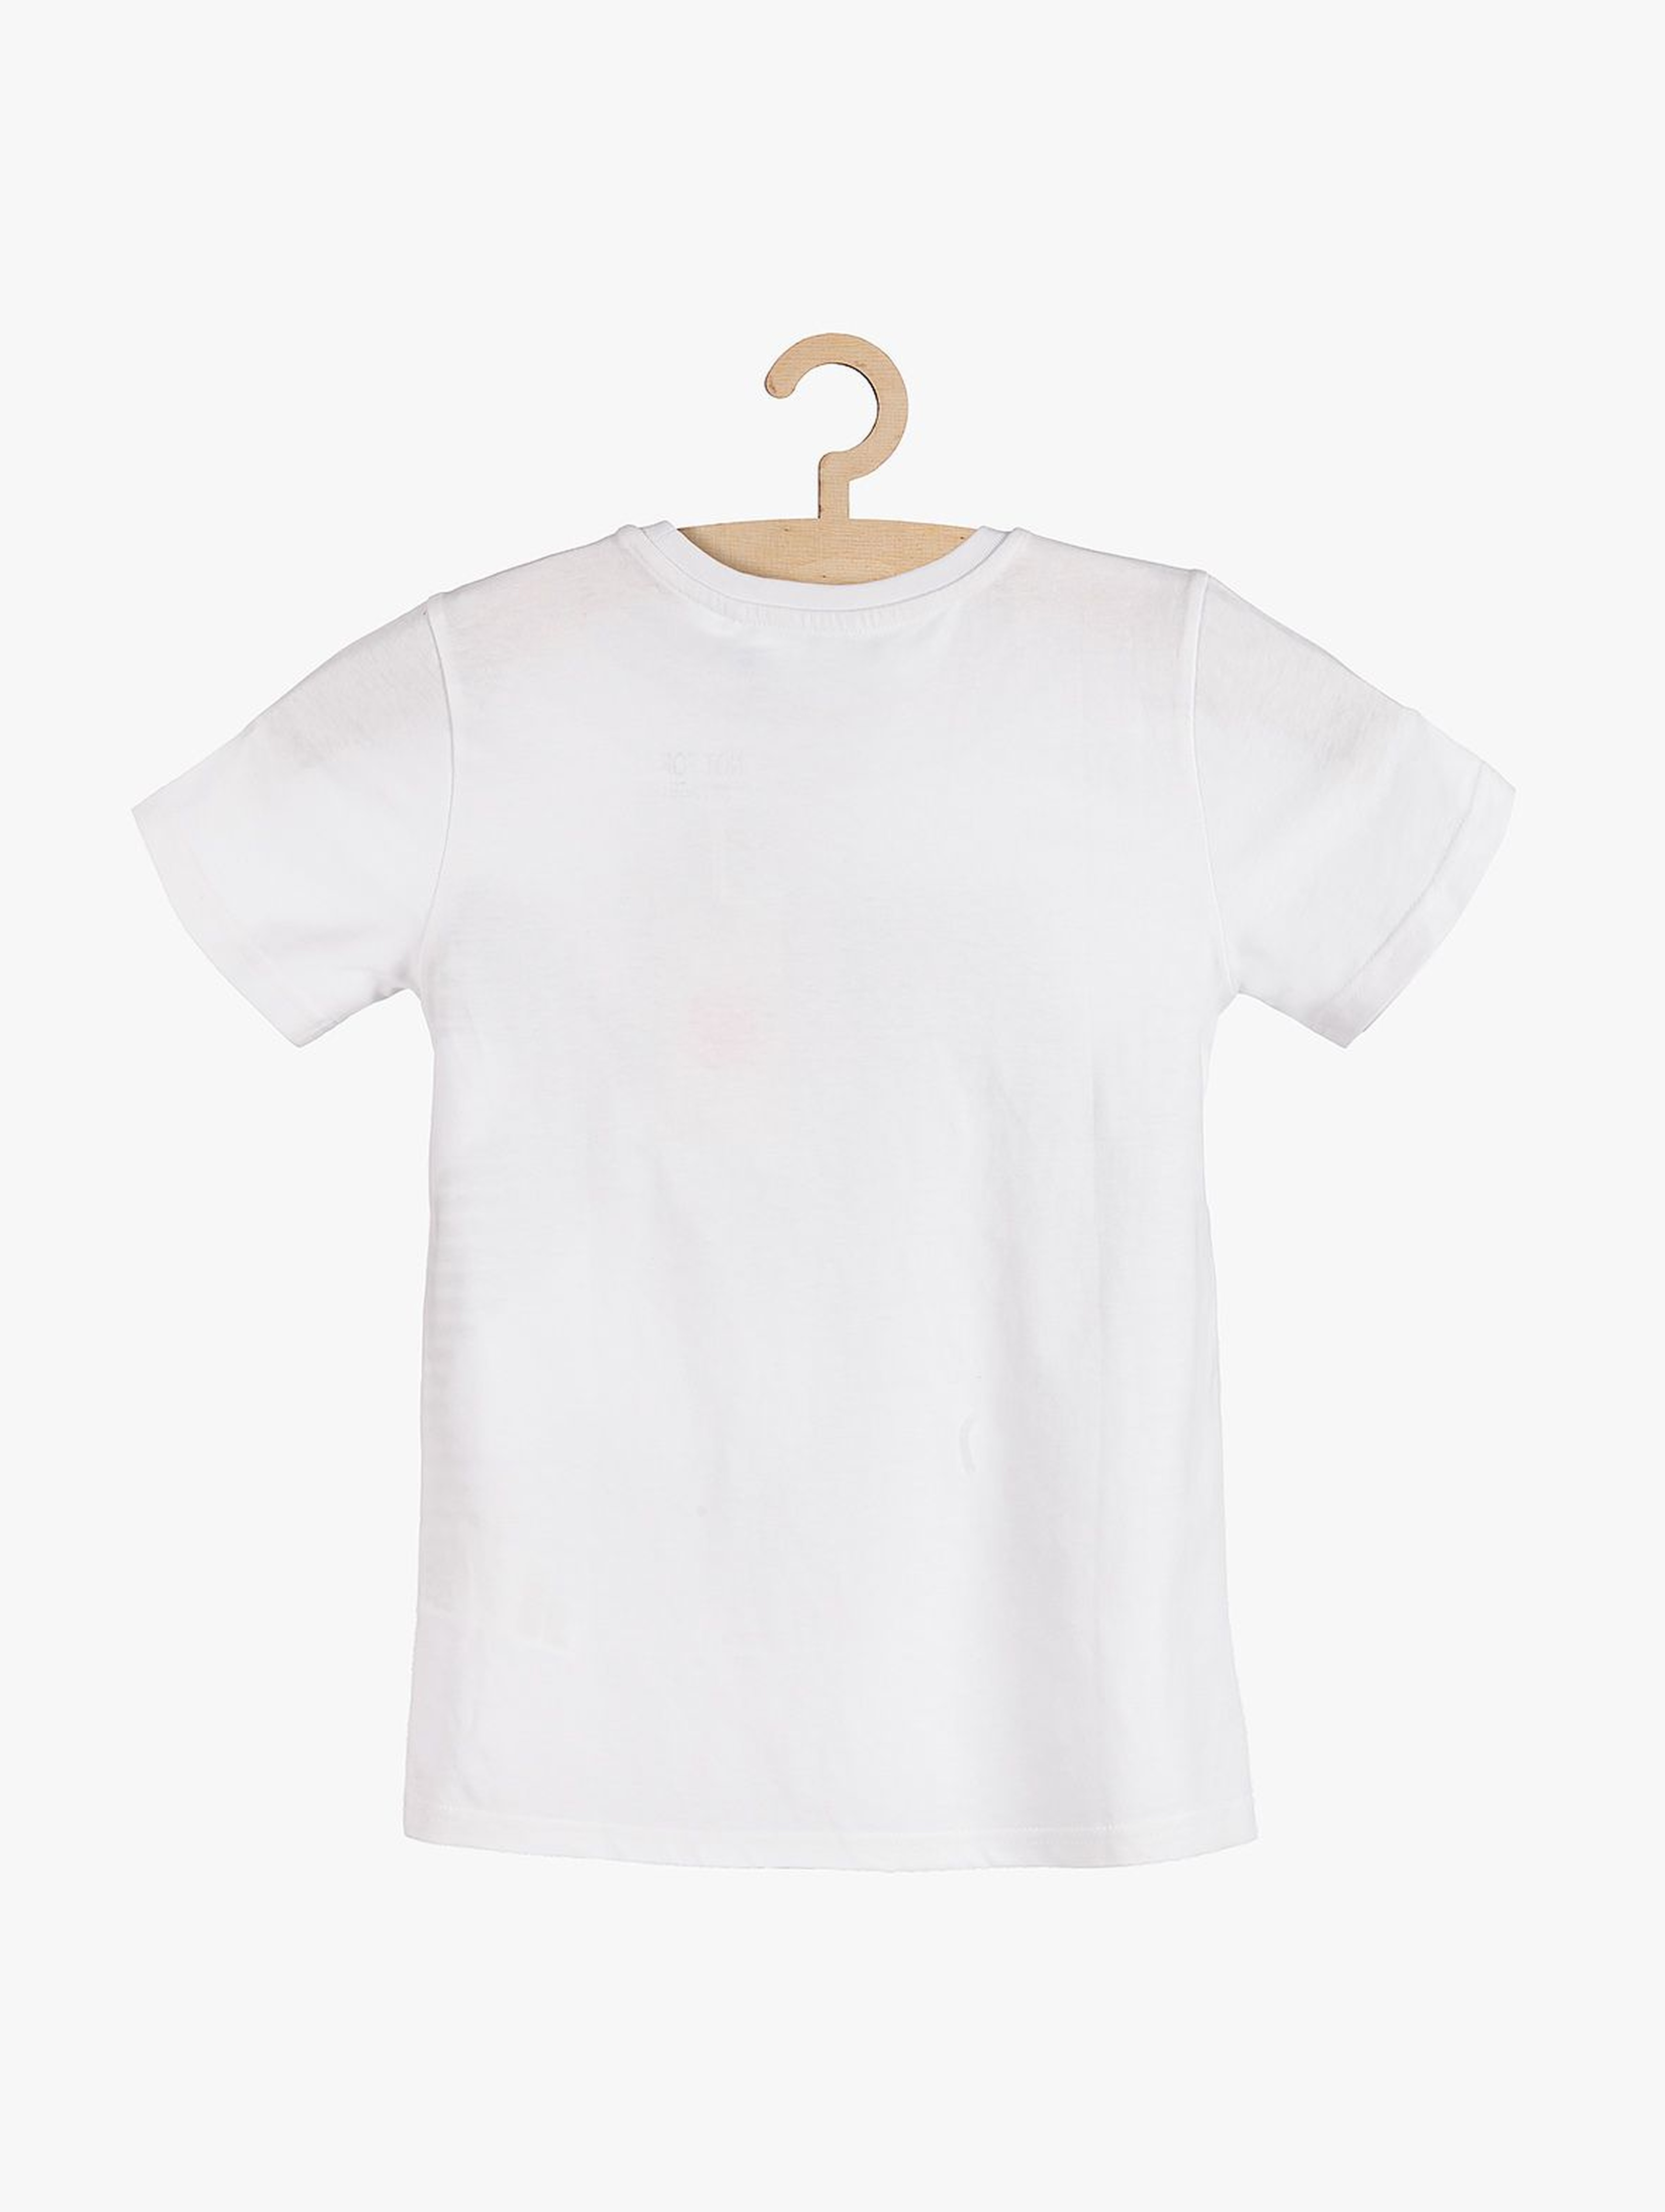 T-shirt chłopięcy biały- YES